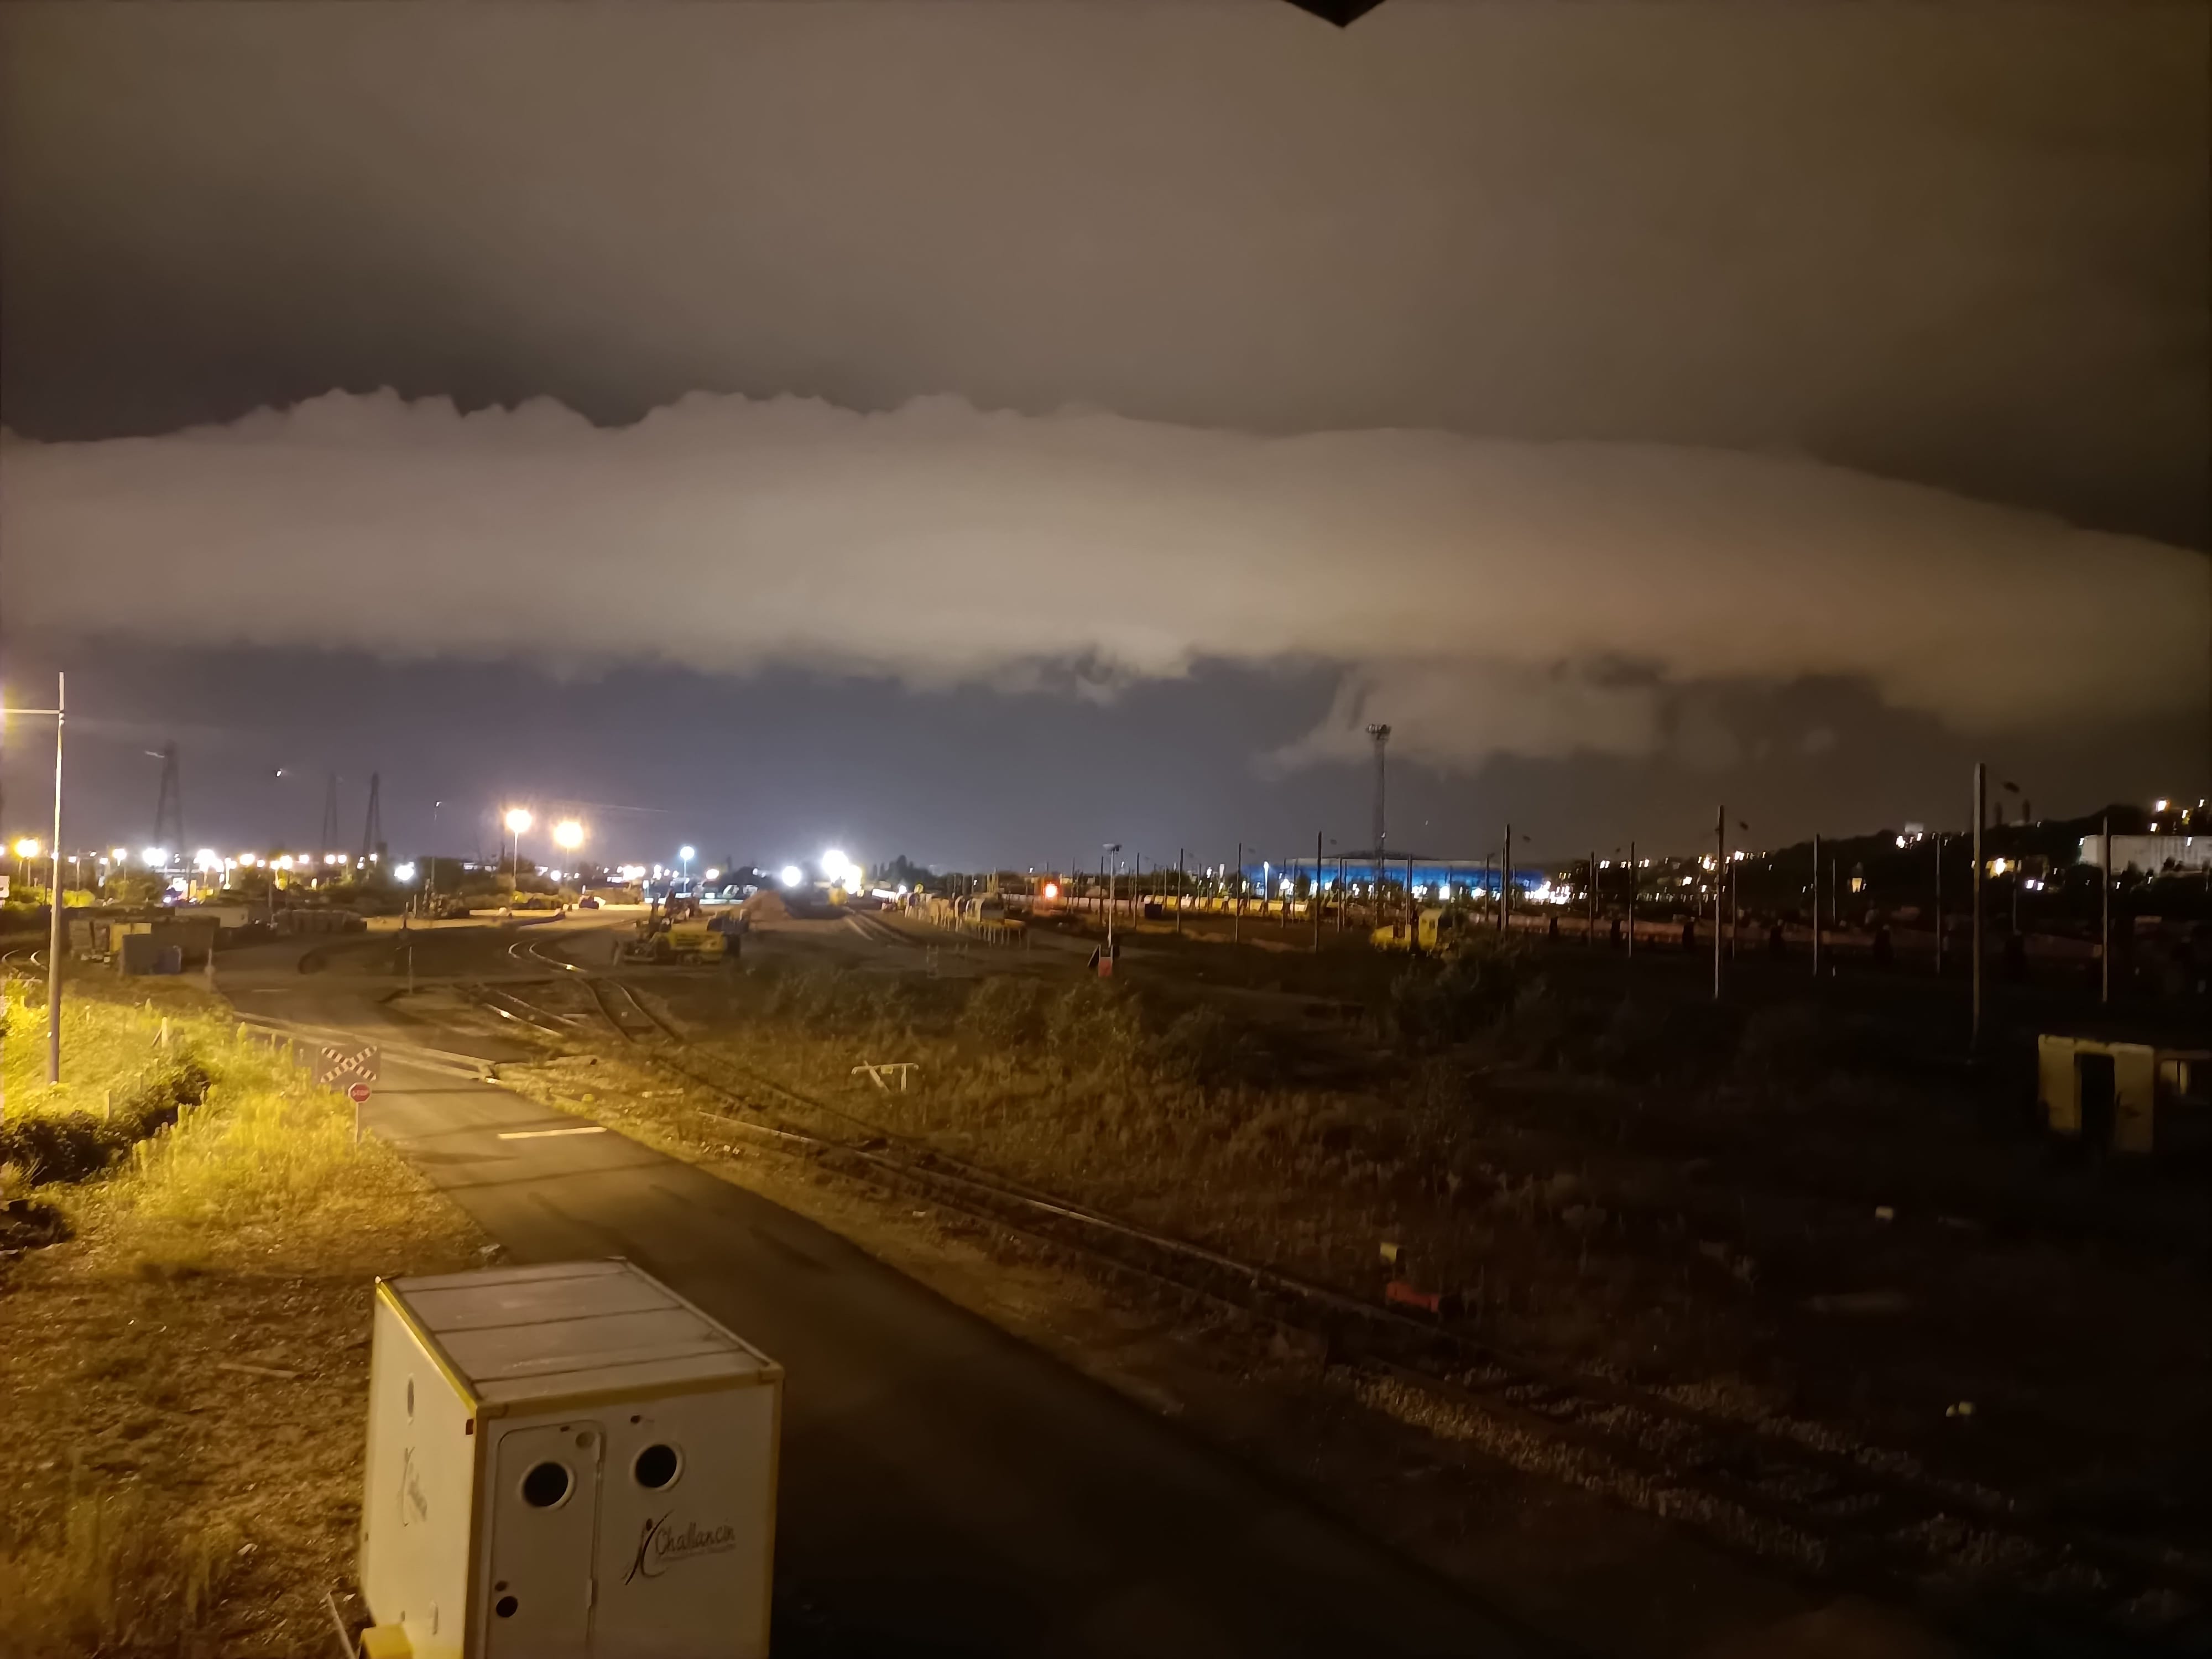 Arcus issue d'une cellule orageuse au dessus du Calvados arrivant sur la cité portuaire du Havre - 14/09/2021 05:45 - Yves MENETRIER